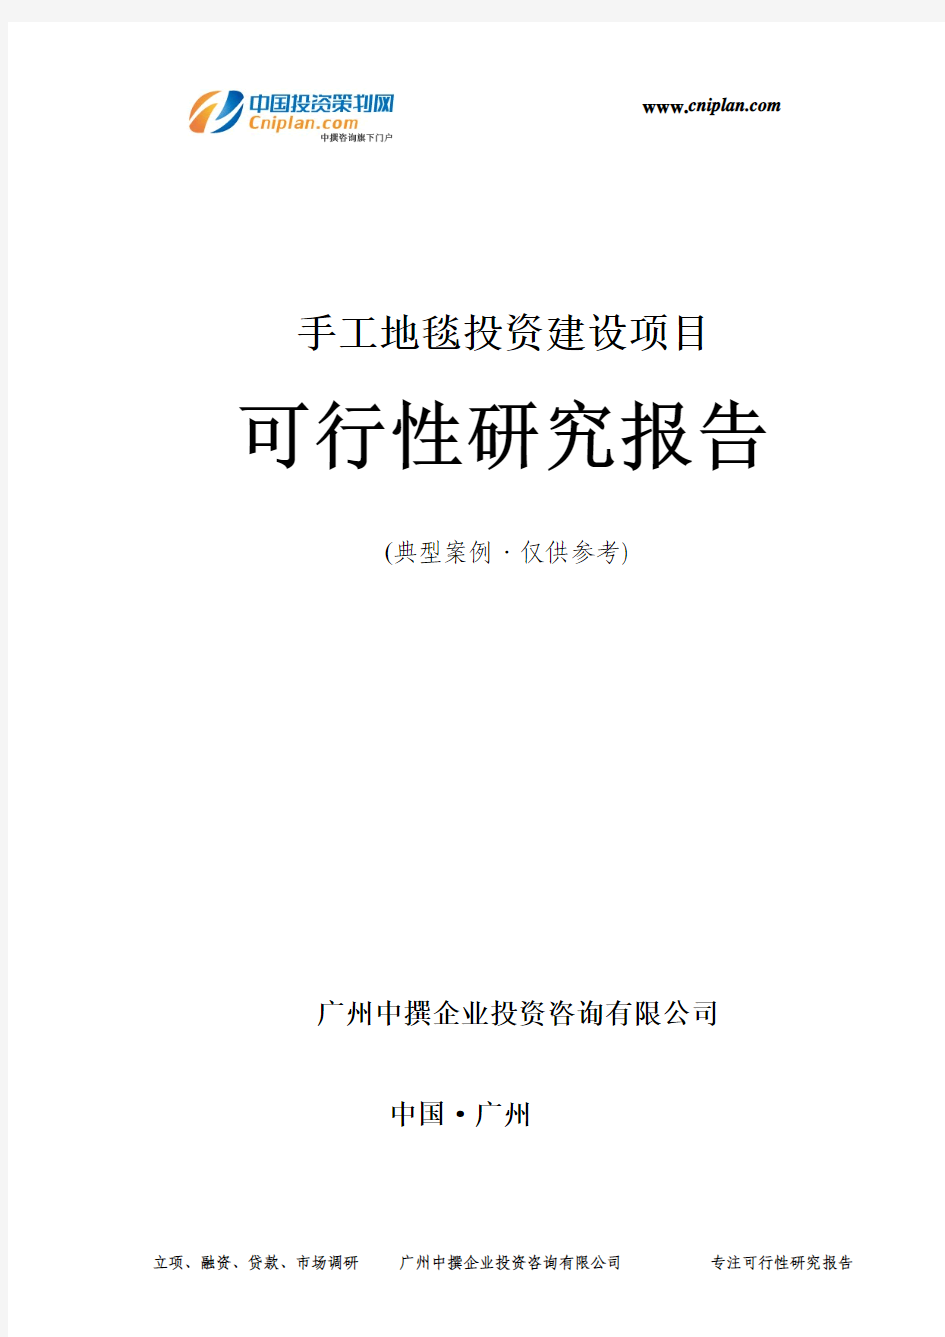 手工地毯投资建设项目可行性研究报告-广州中撰咨询